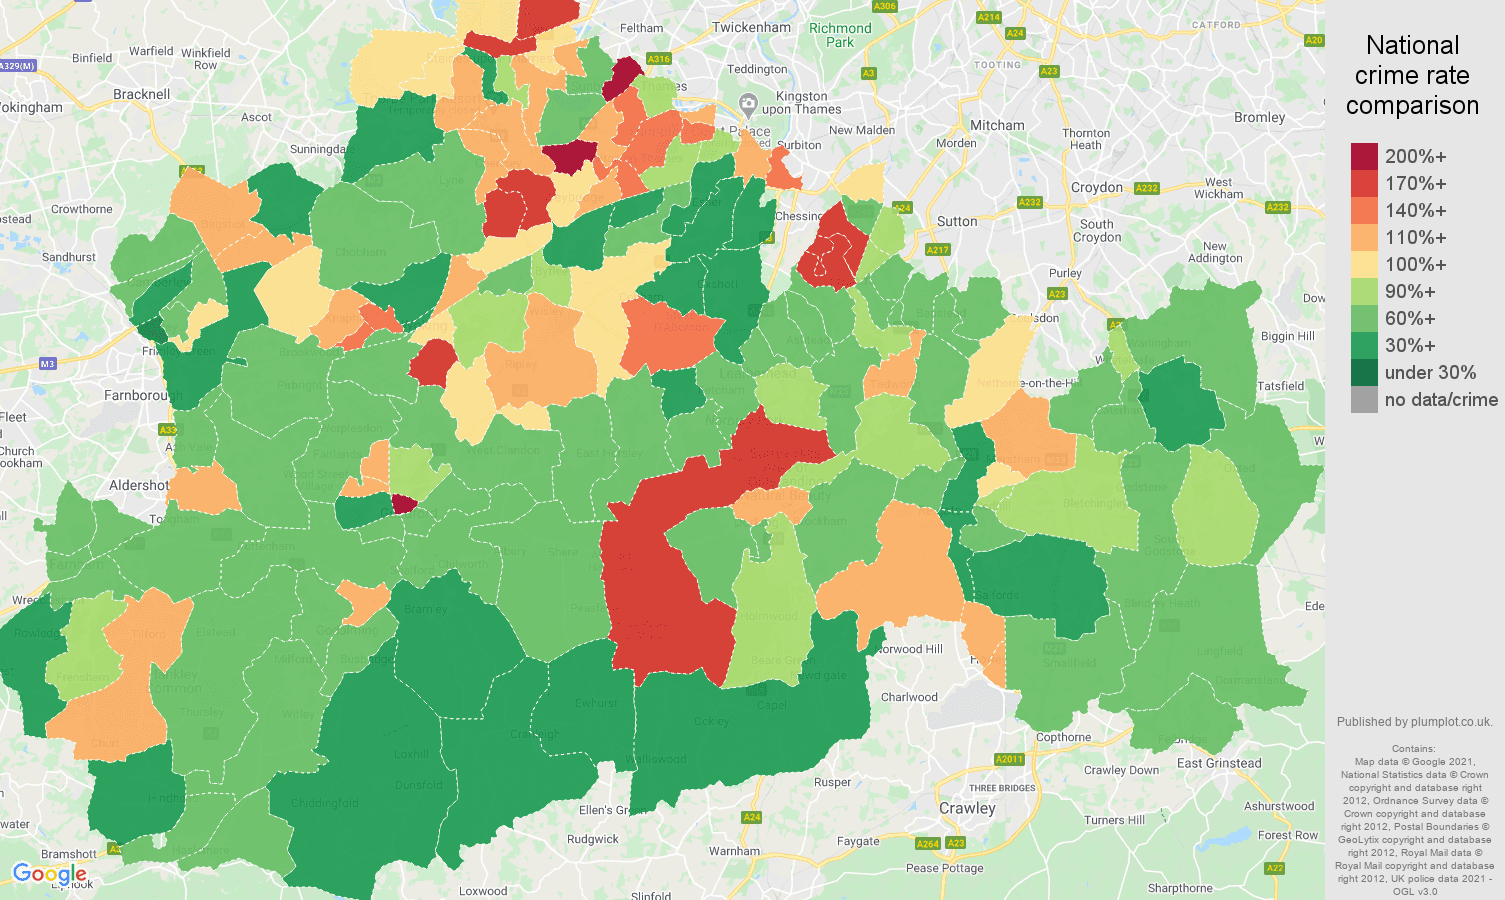 Surrey antisocial behaviour crime rate comparison map